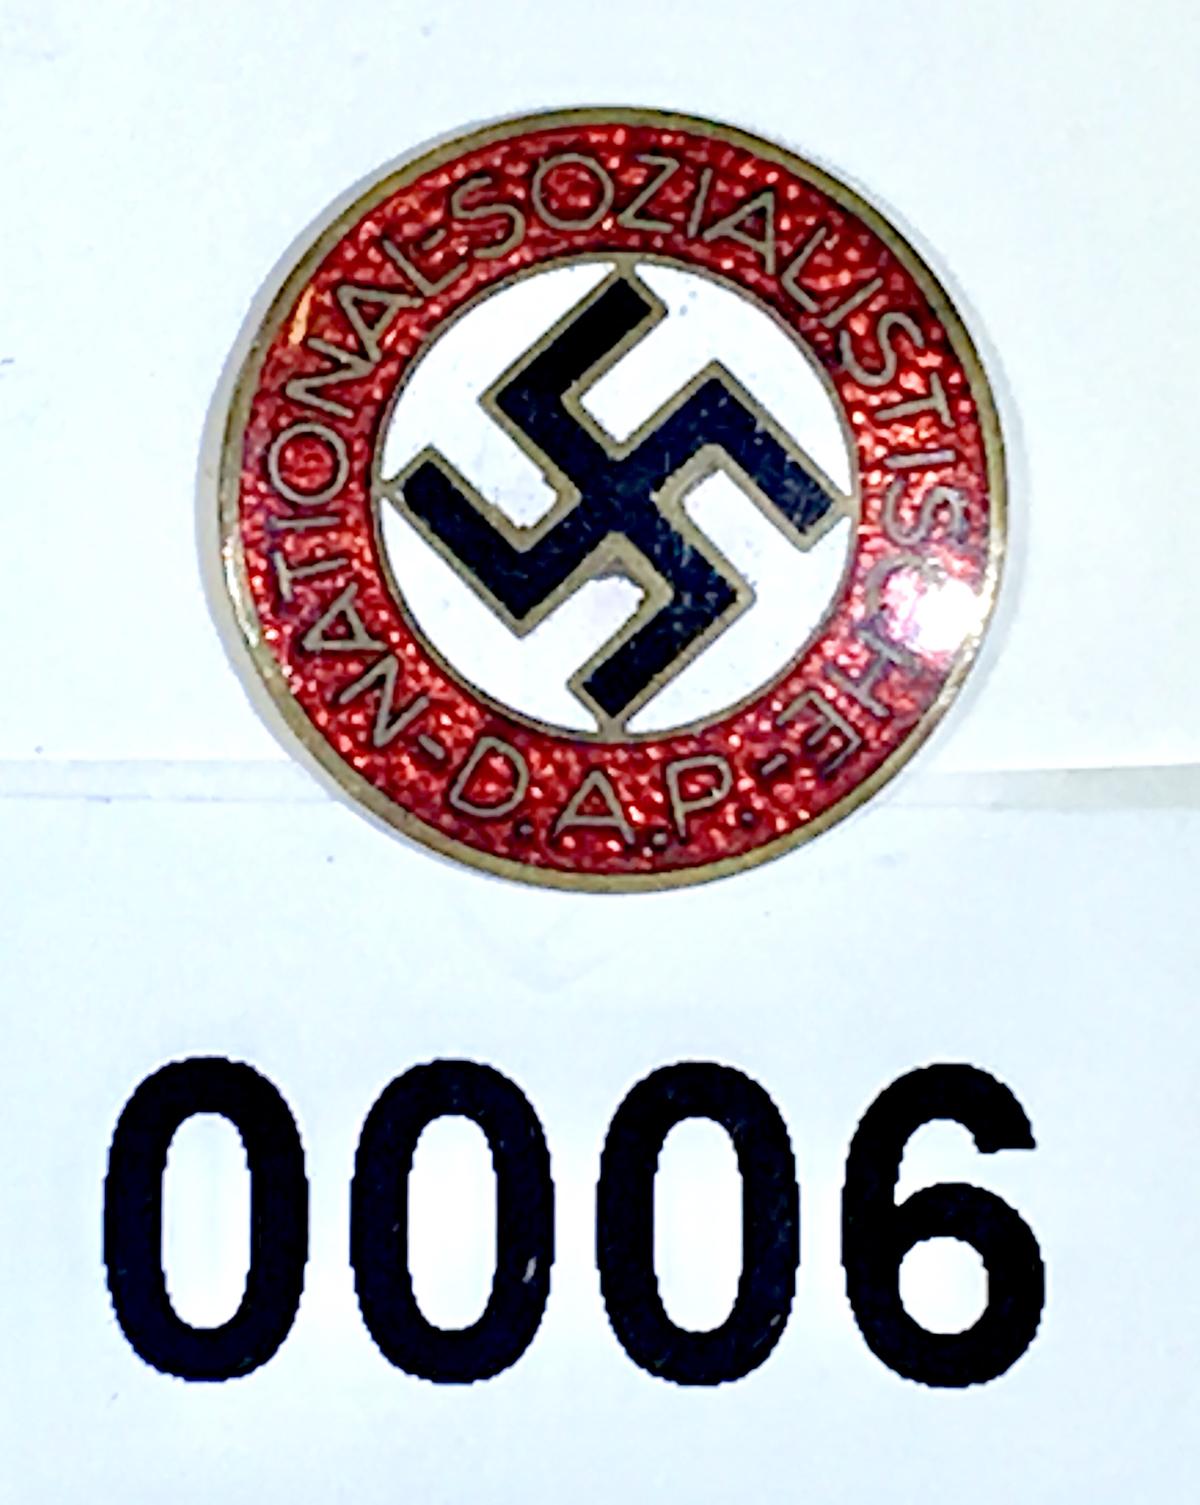 NSDAP enamel pin